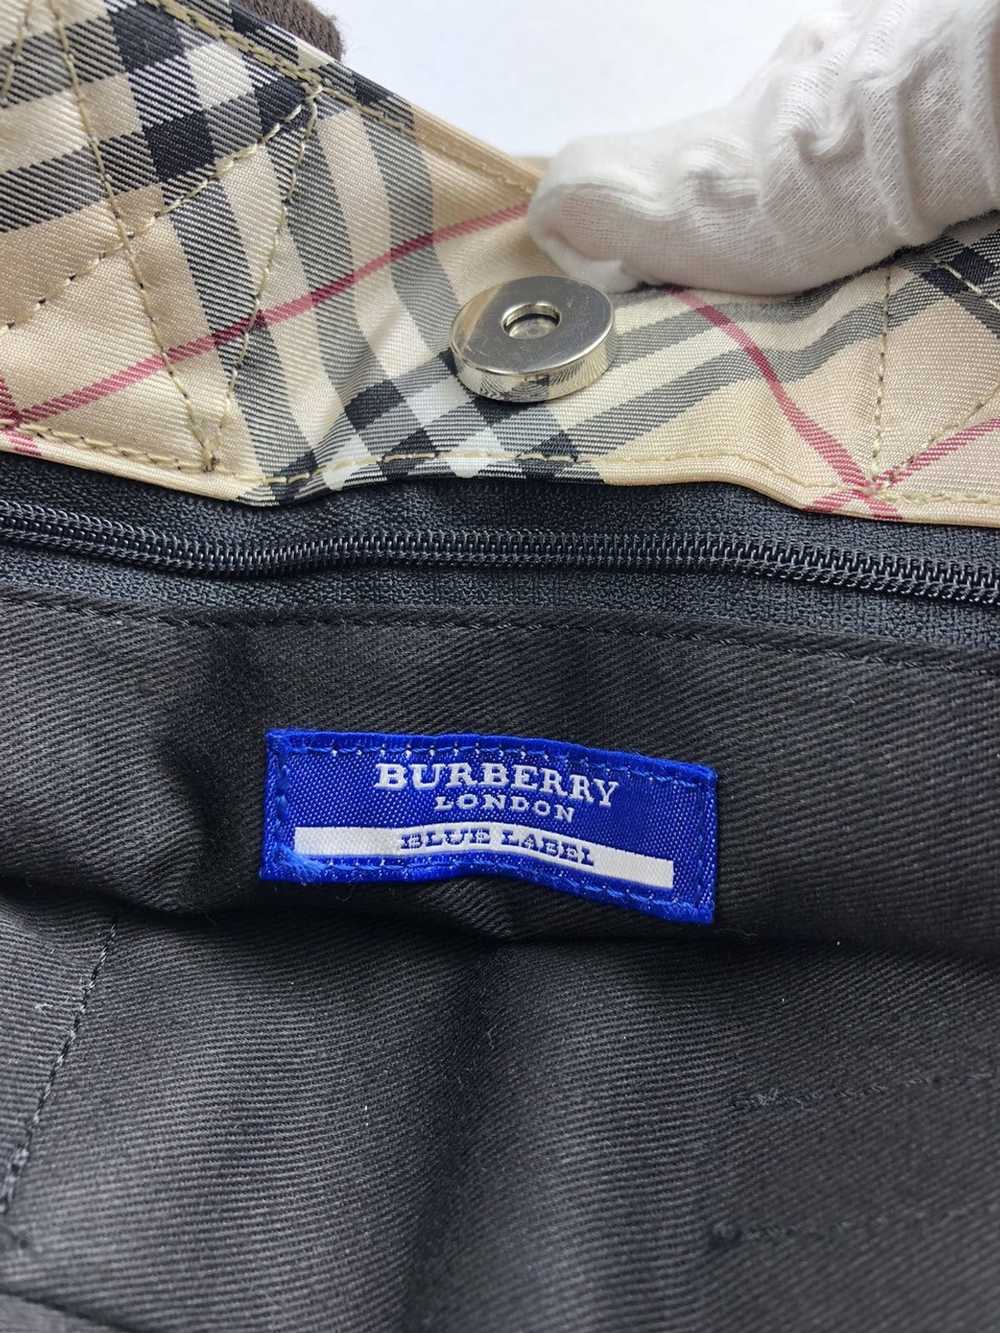 Burberry Burberry nova check tote bag - image 8